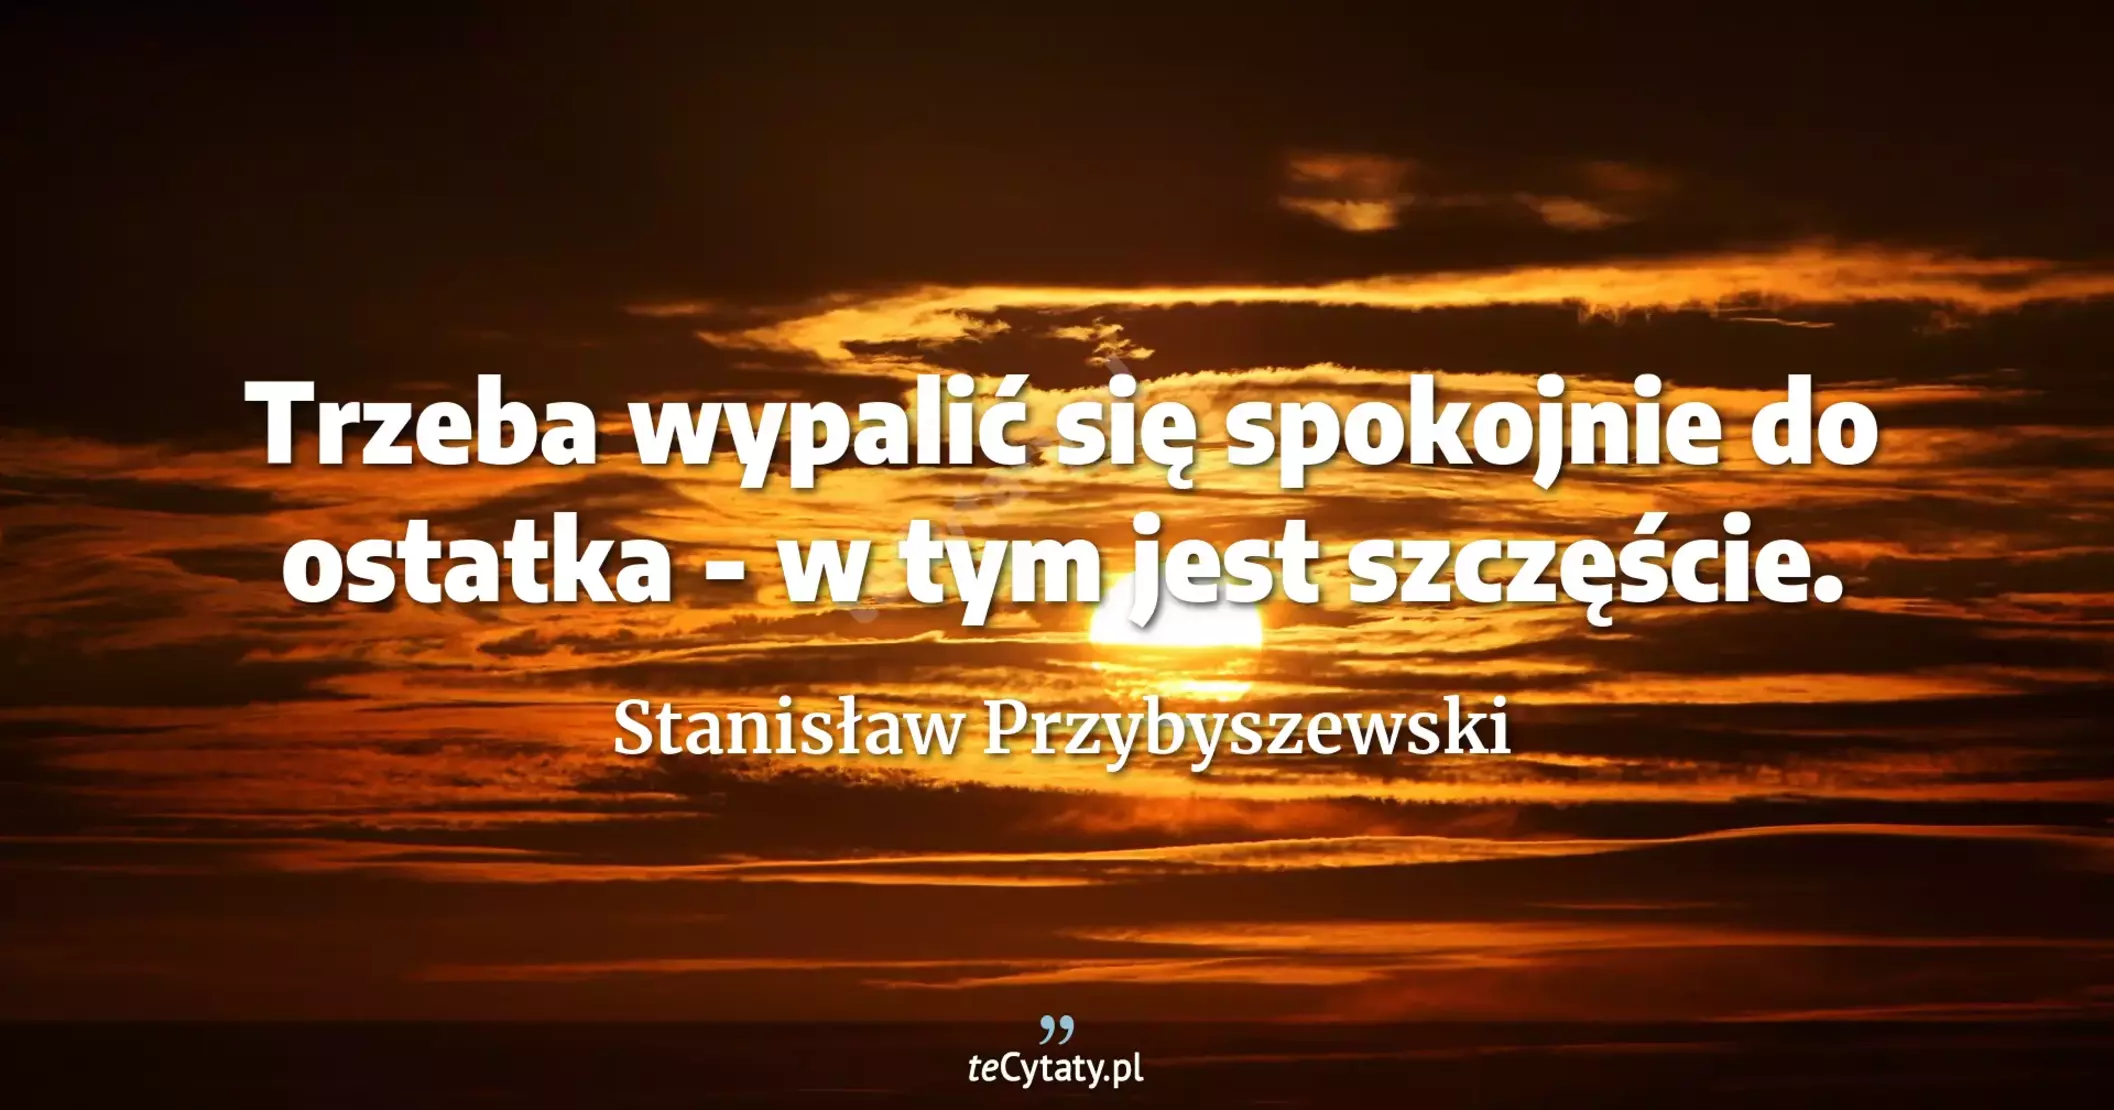 Trzeba wypalić się spokojnie do ostatka - w tym jest szczęście. - Stanisław Przybyszewski